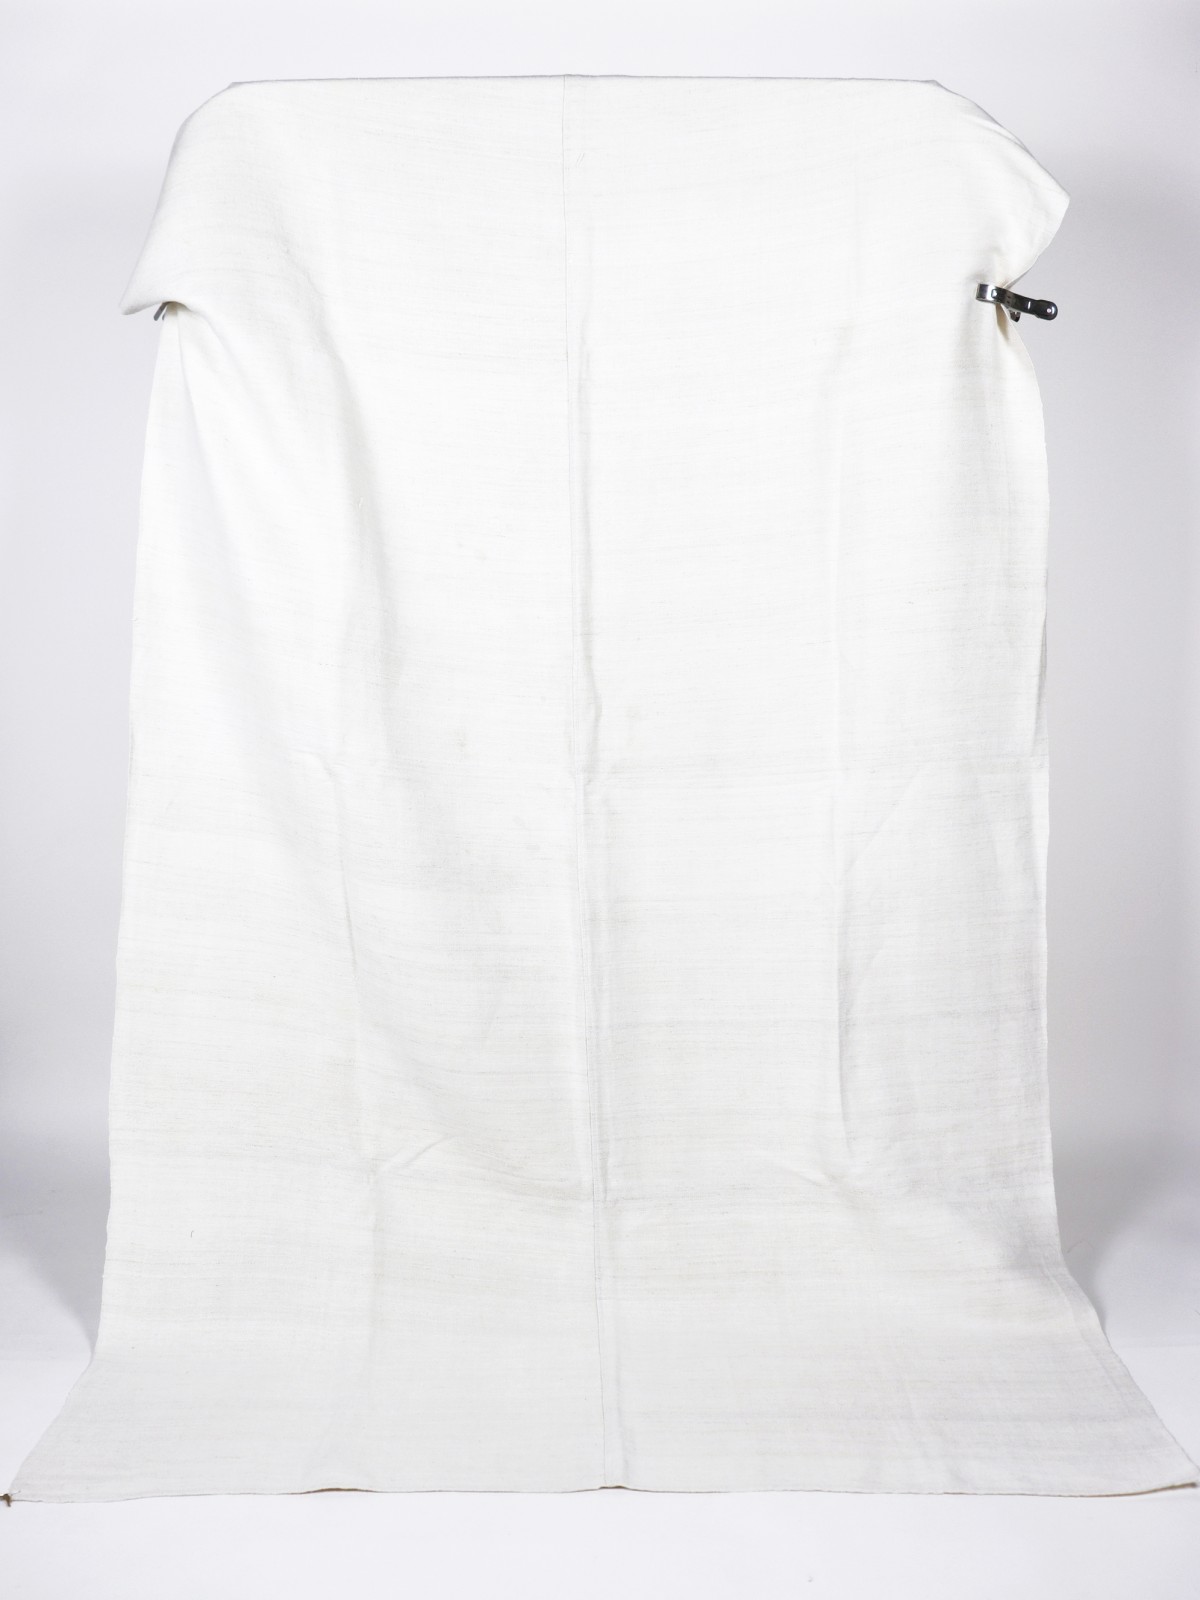 1960's, hungarian linen, sheet